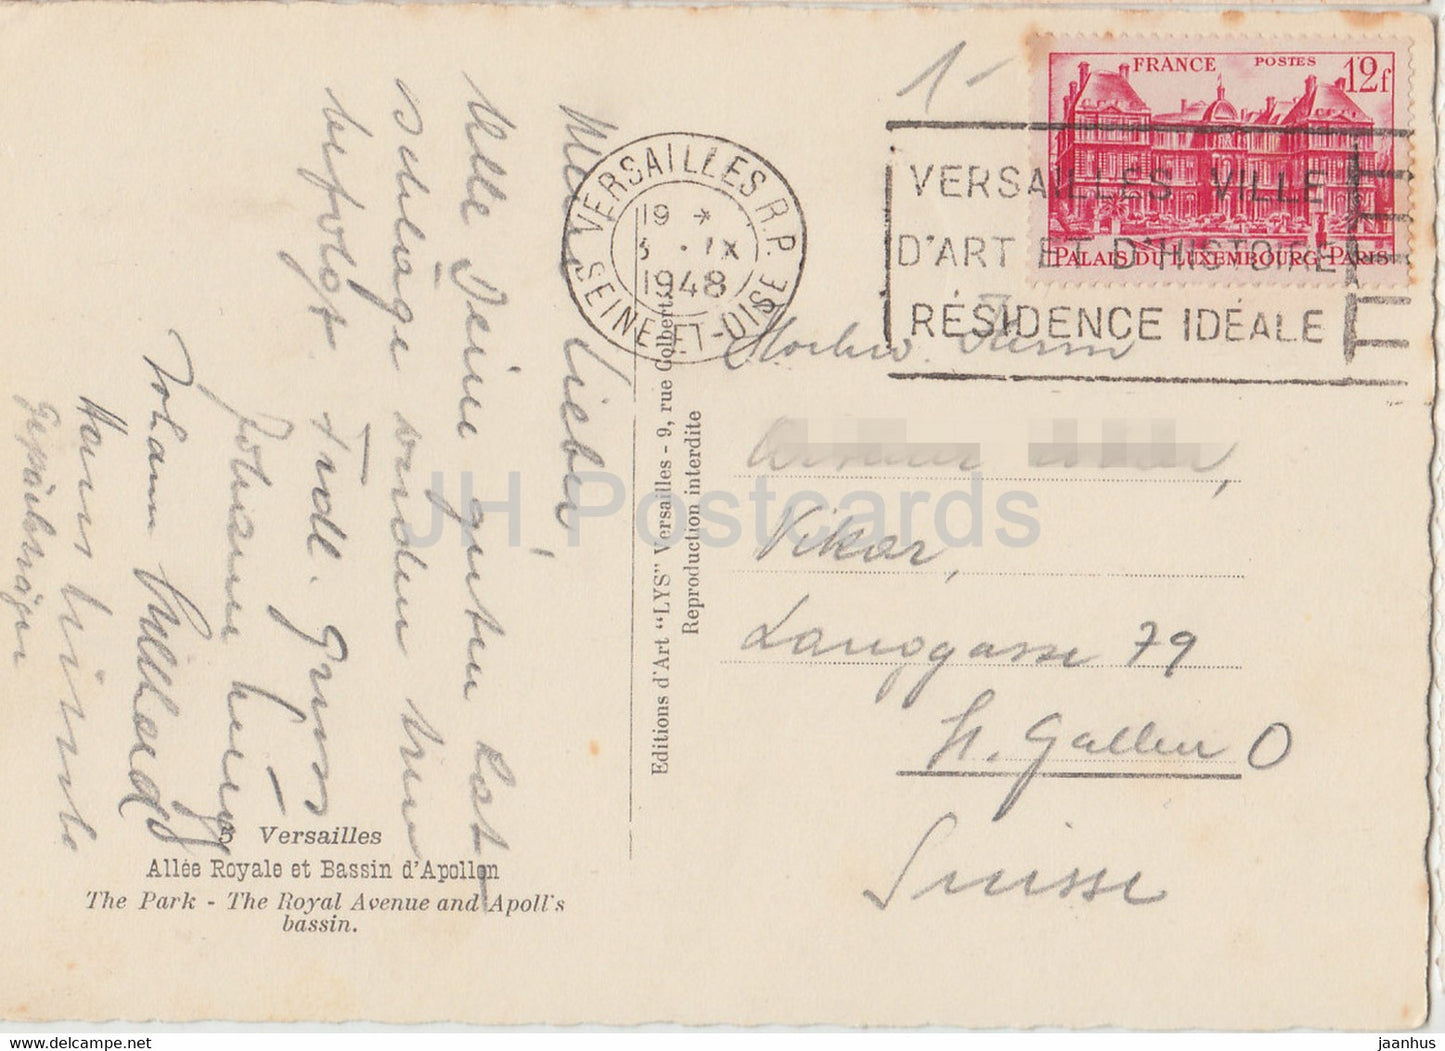 Versailles - Allée Royale et Bassin d'Appolon - Le Parc - Avenue Royale - carte postale ancienne - 1948 - France - occasion